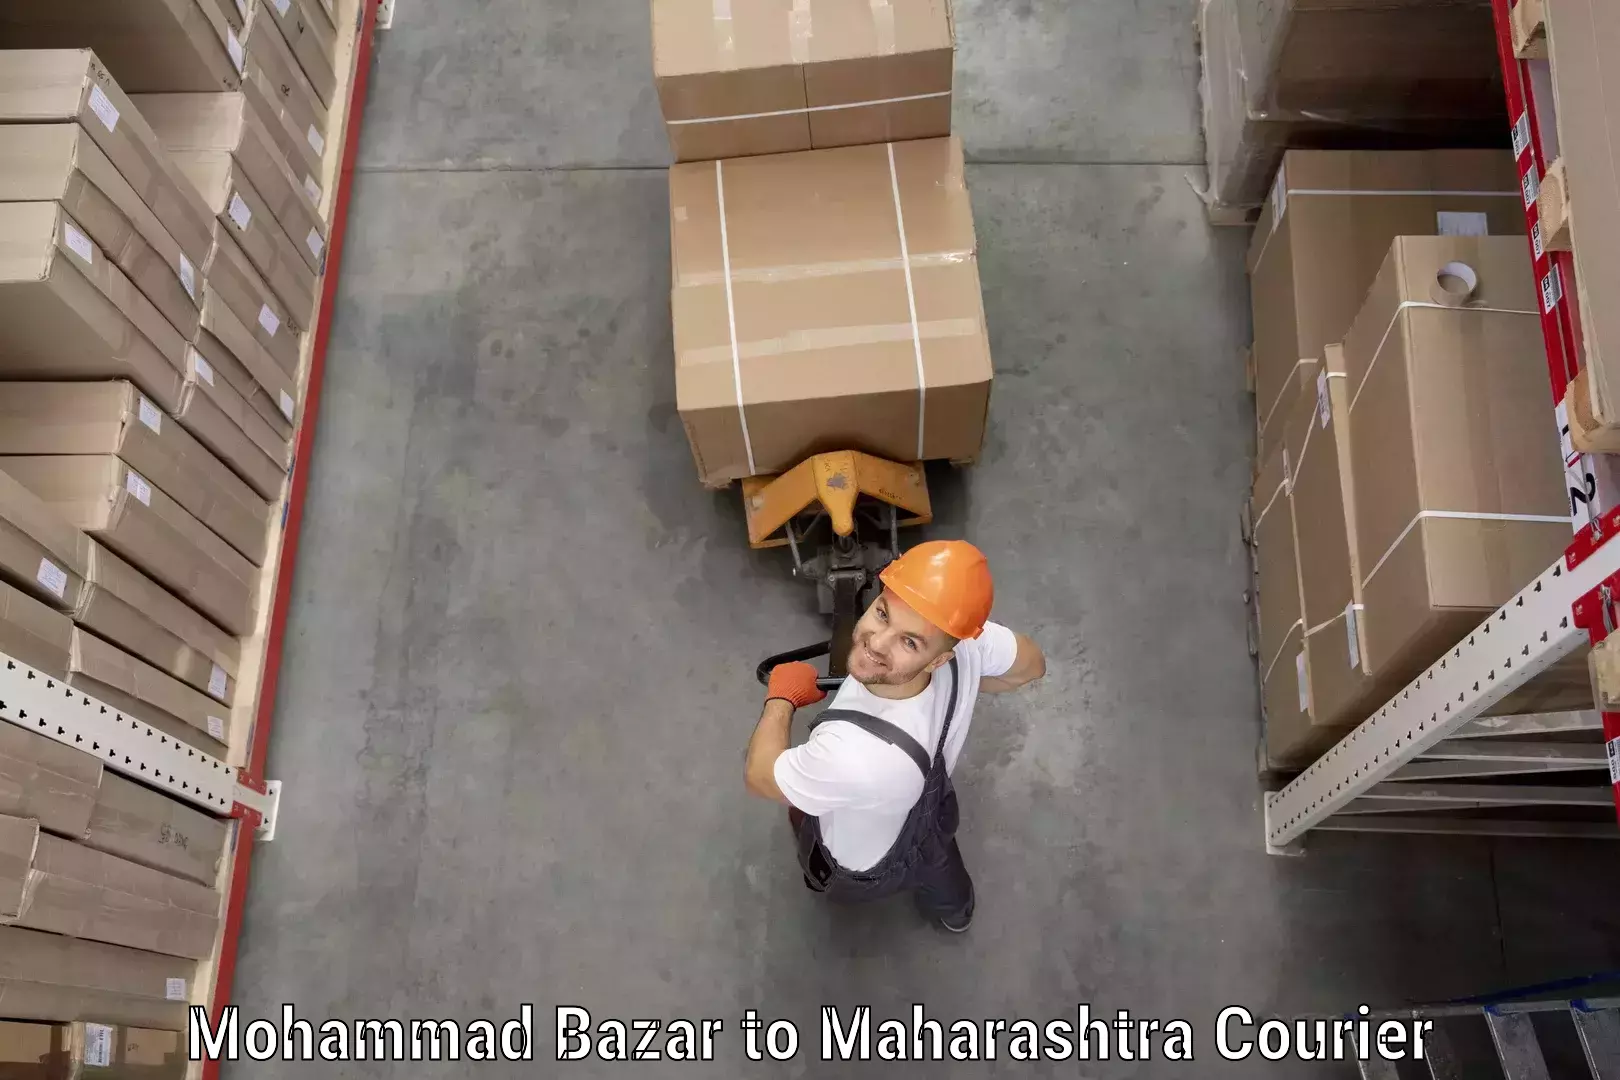 Tracking updates Mohammad Bazar to Maharashtra